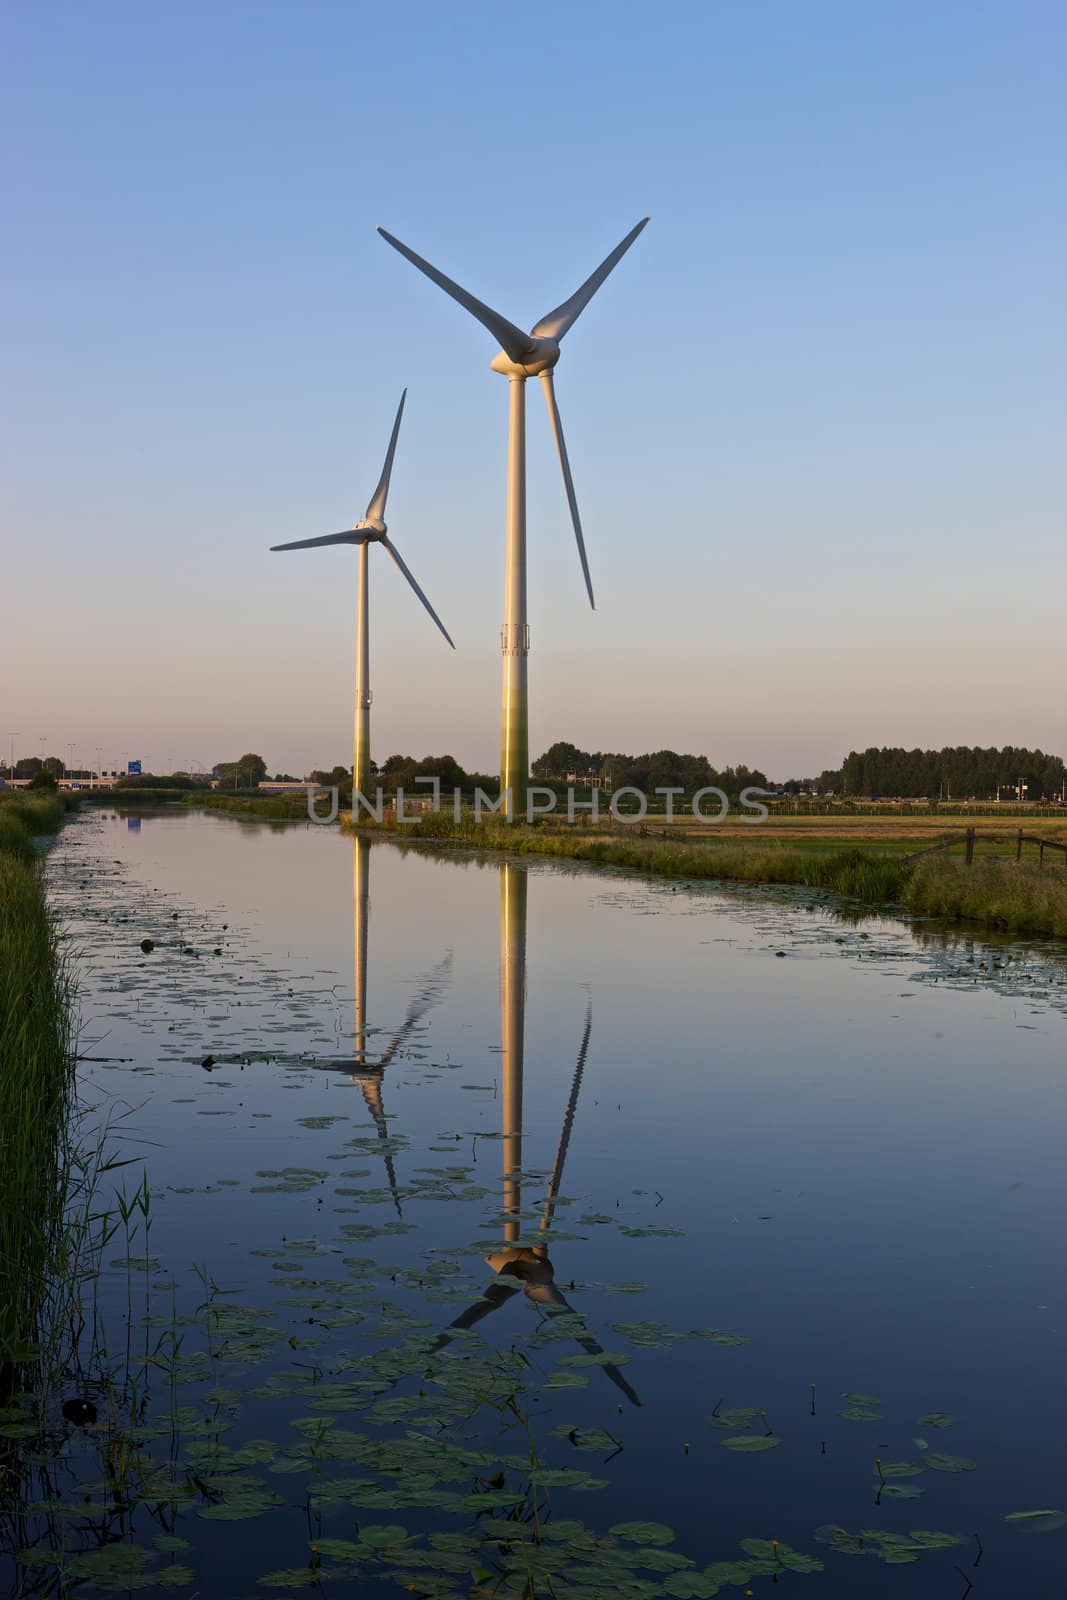 Two modern wind turbines in a Dutch landscape.